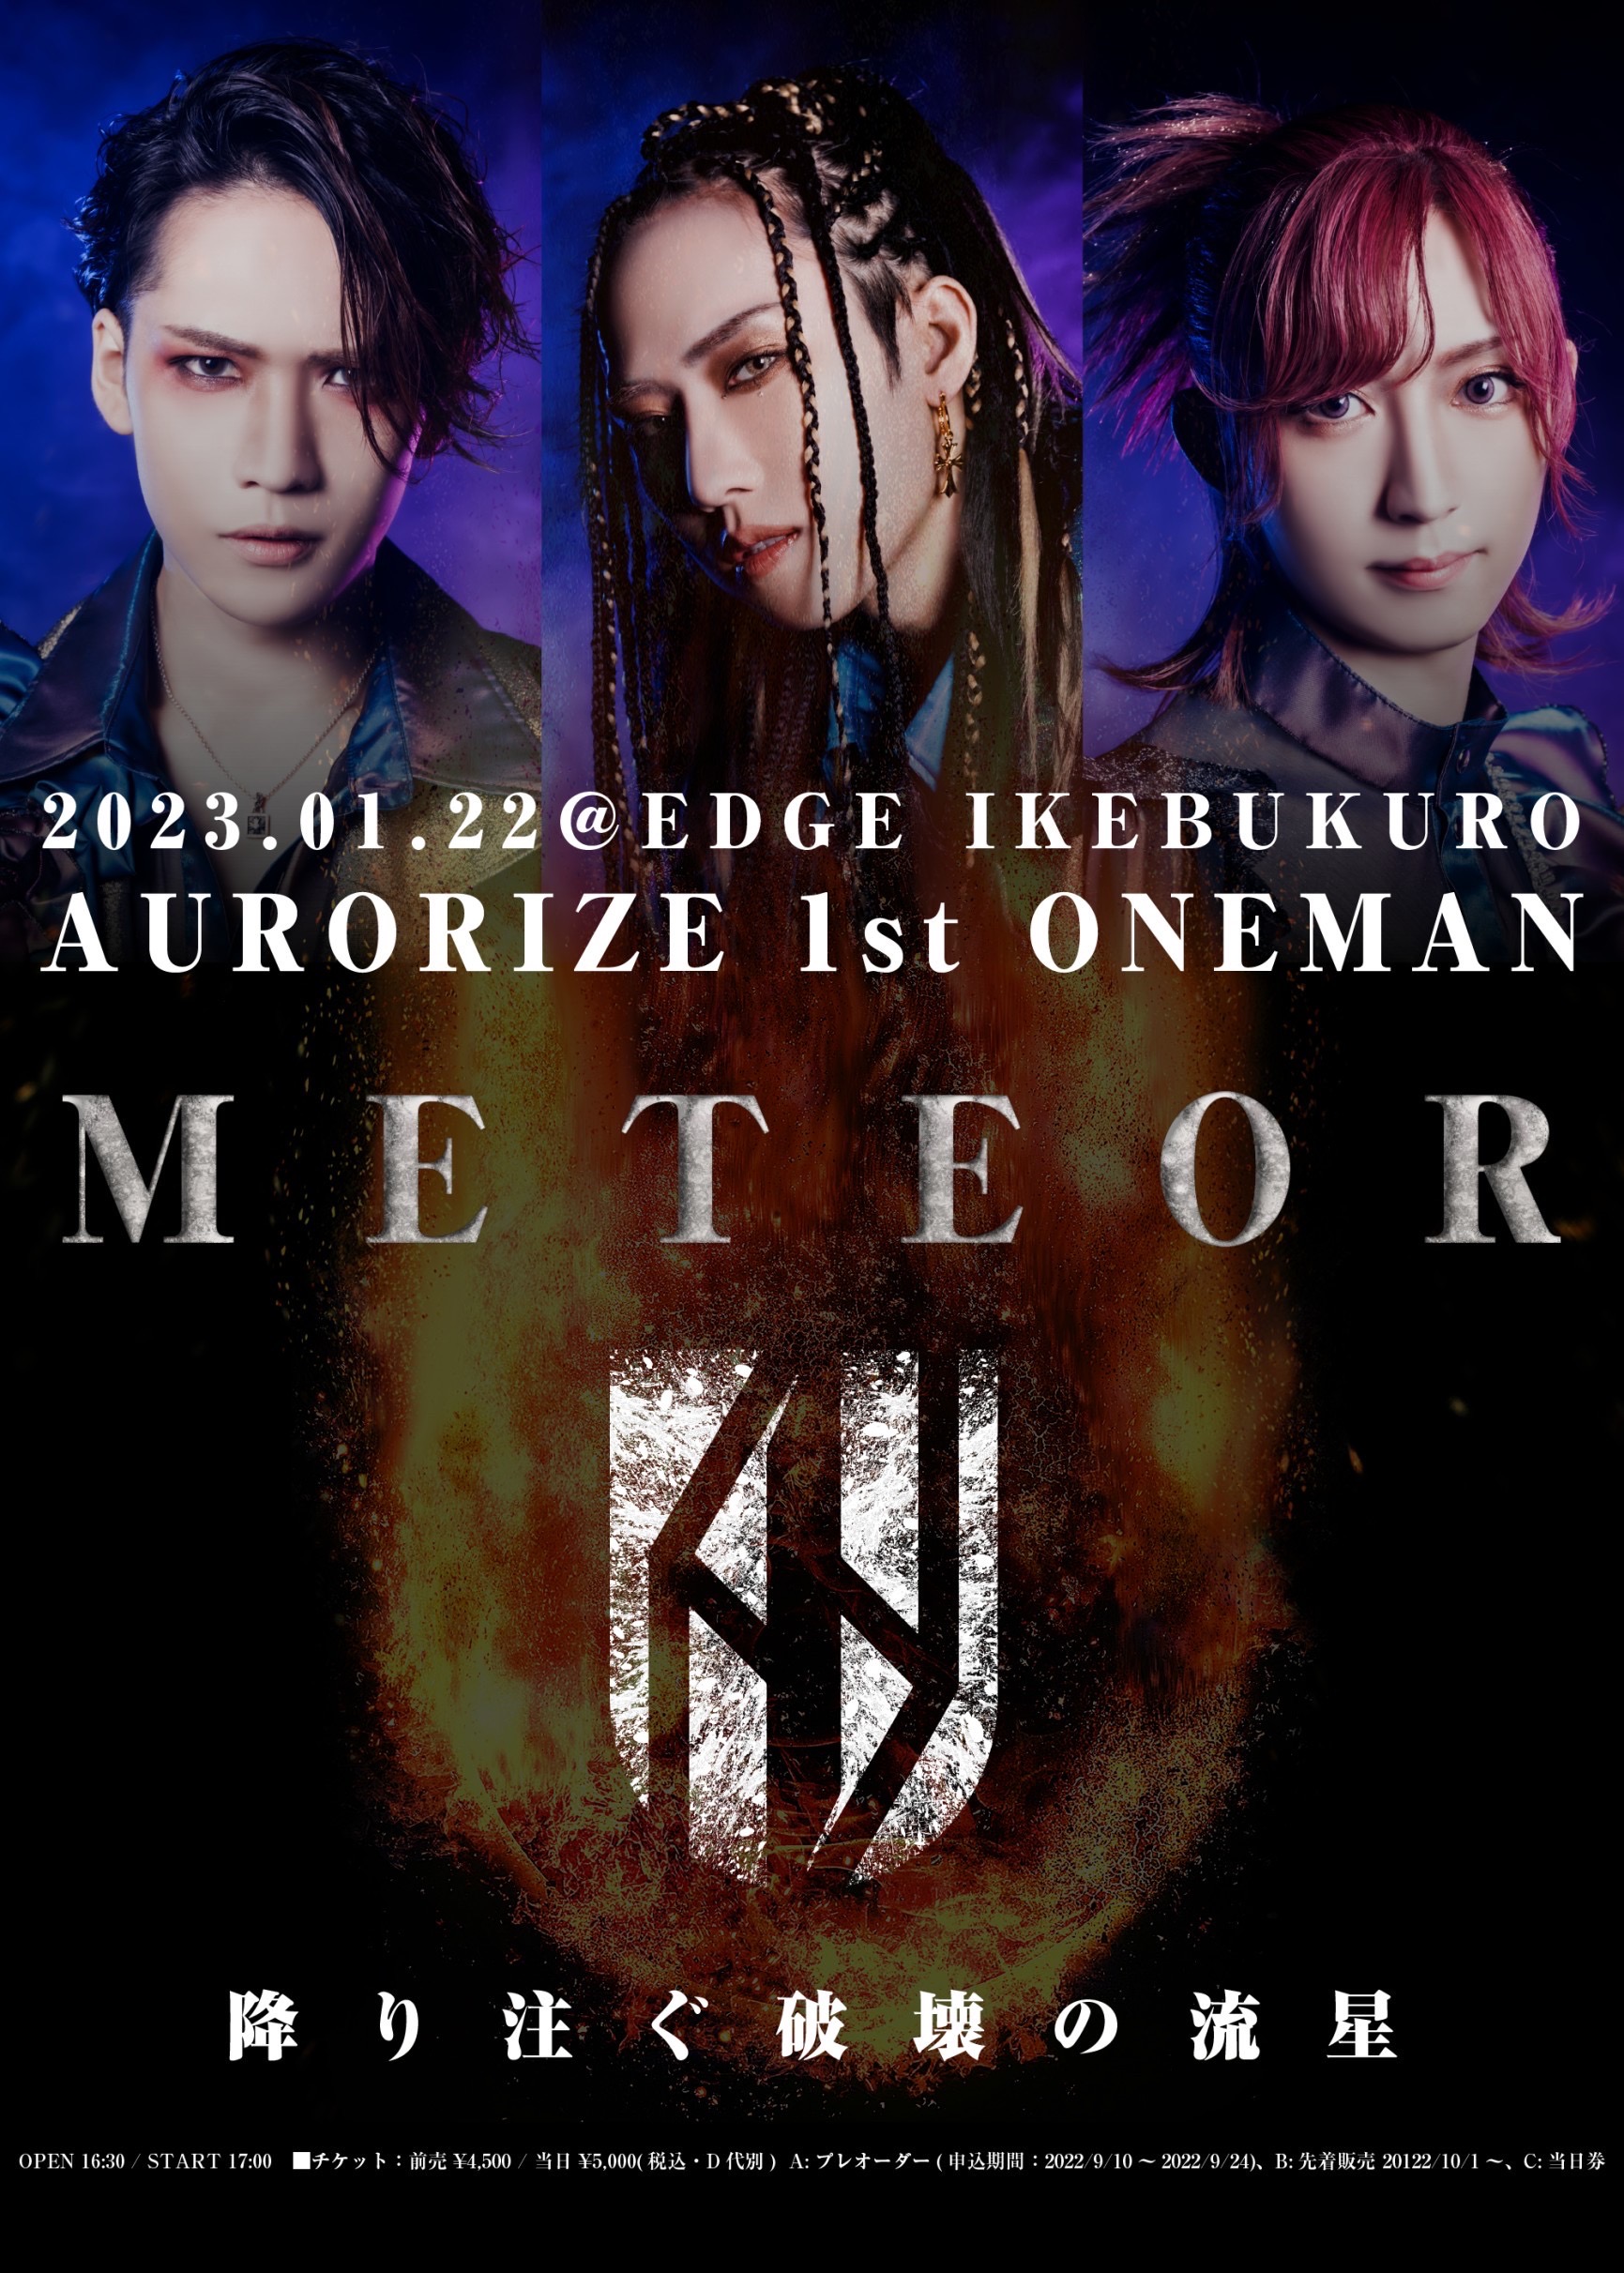 AURORIZE 1st ONEMAN『METEOR』